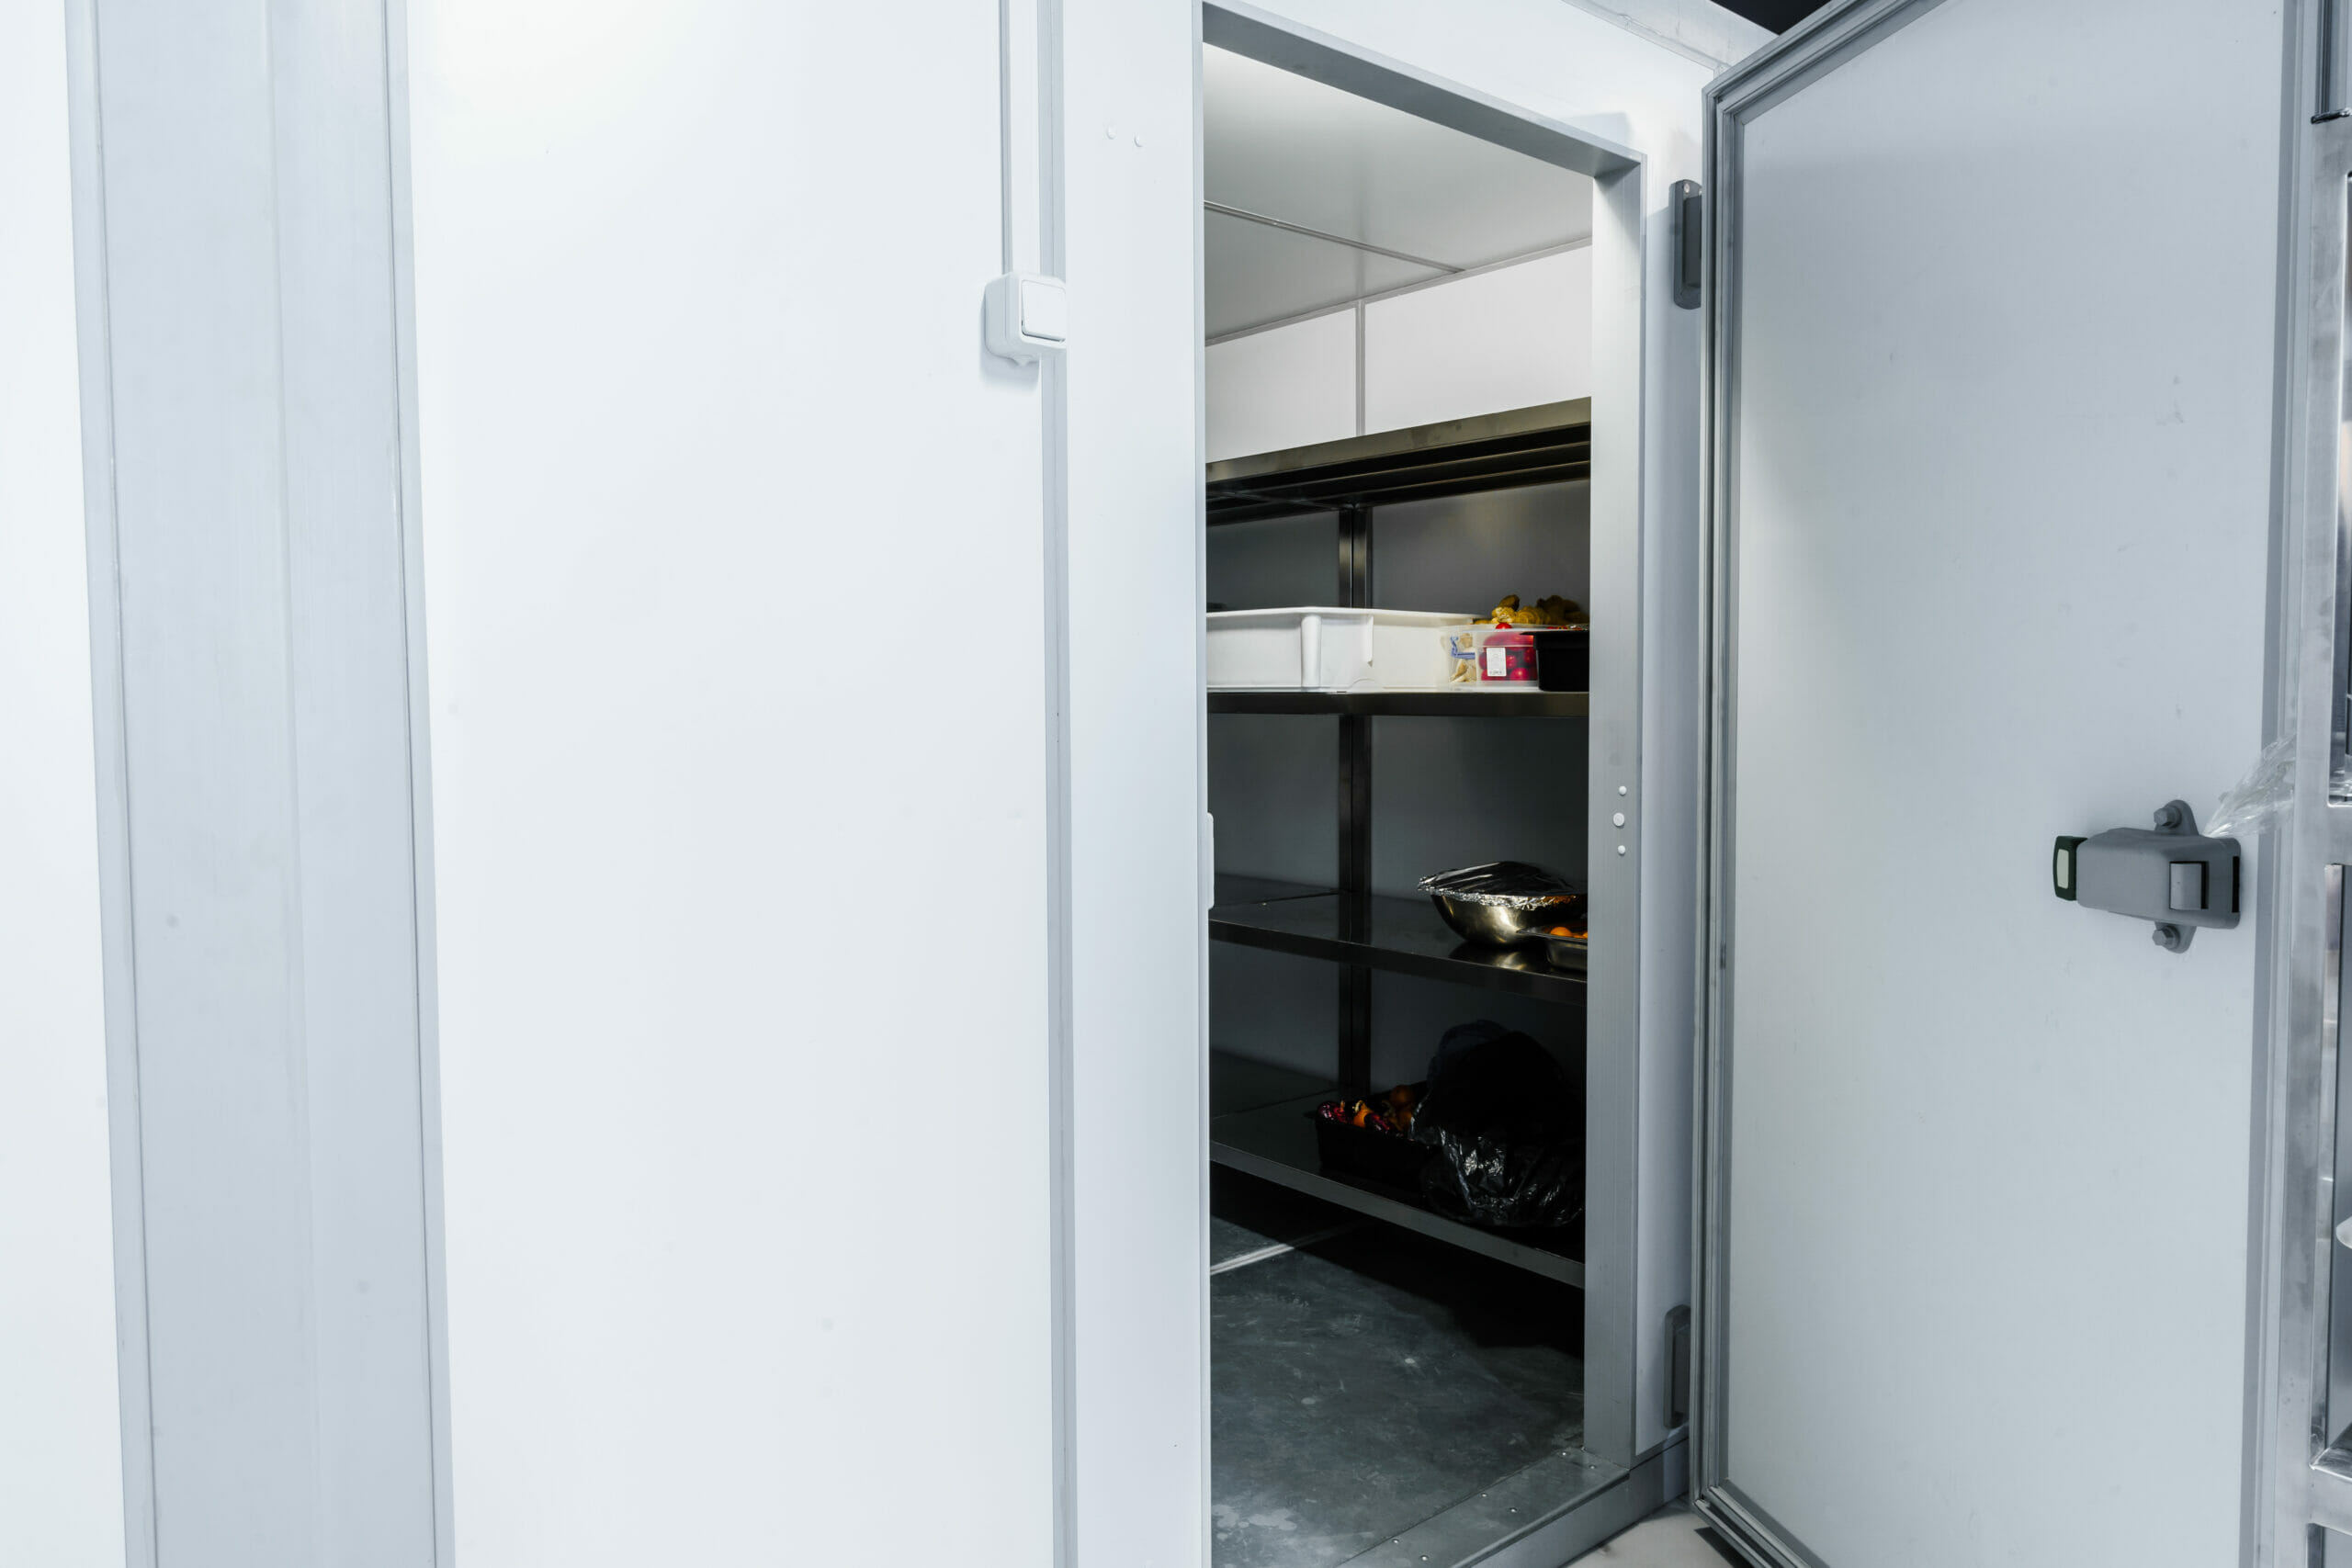 Commercial Overhead Door Tips: Choosing a Freezer Door